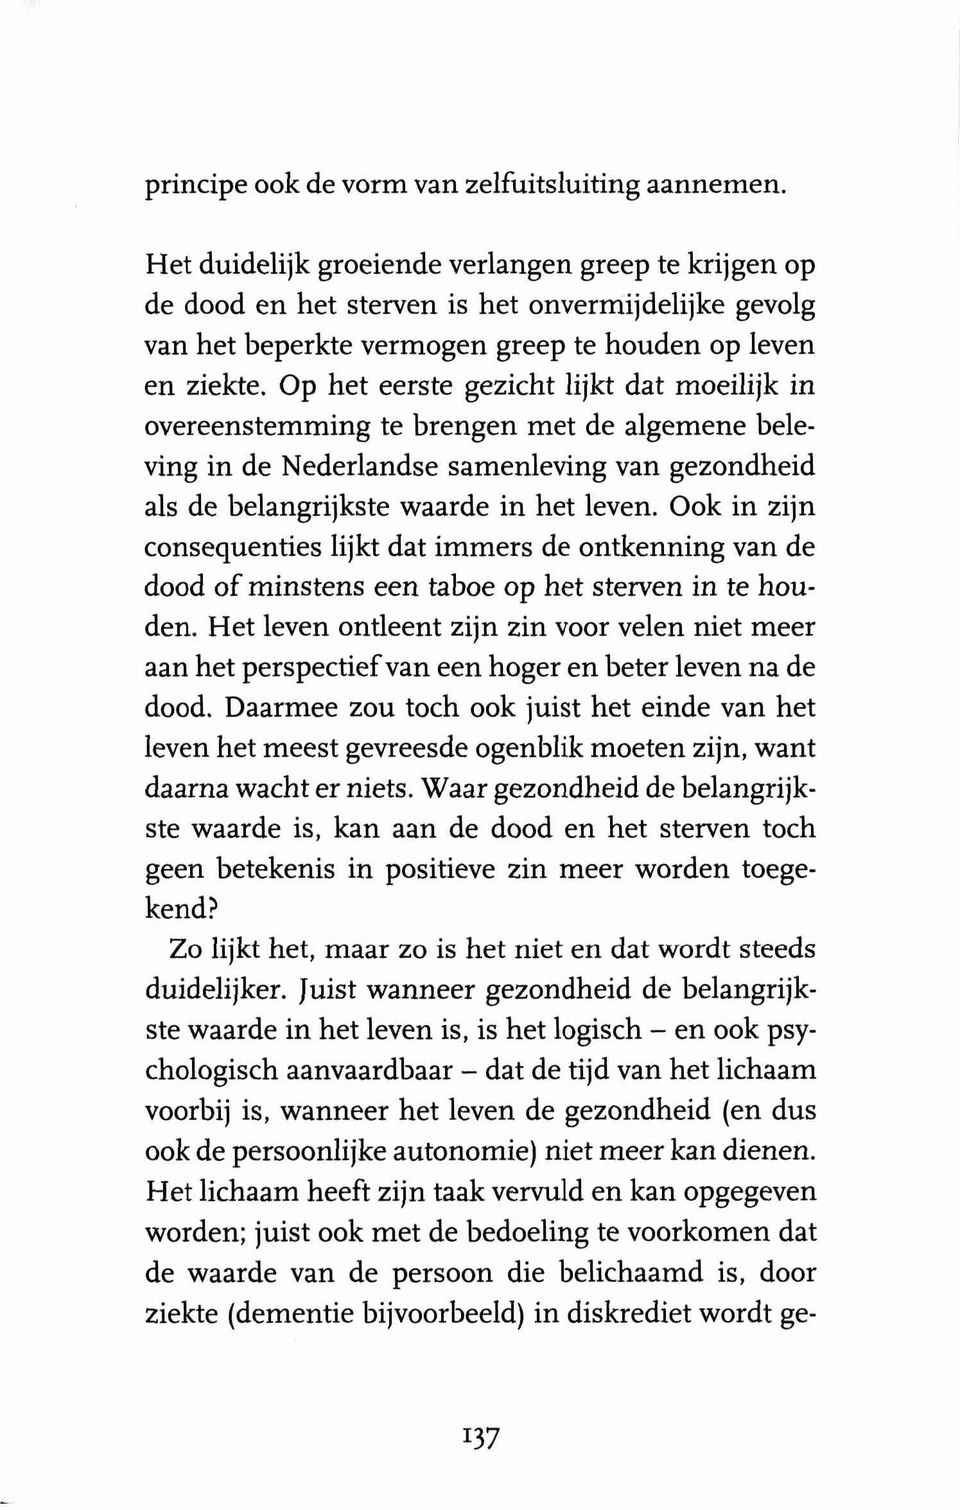 Op het eerste gezicht lijkt dat moeilijk in overeenstemming to brengen.met de algemene beleving in de Nederlandse samenleving van gezondheid als de belangrijkste waarde in het leven.